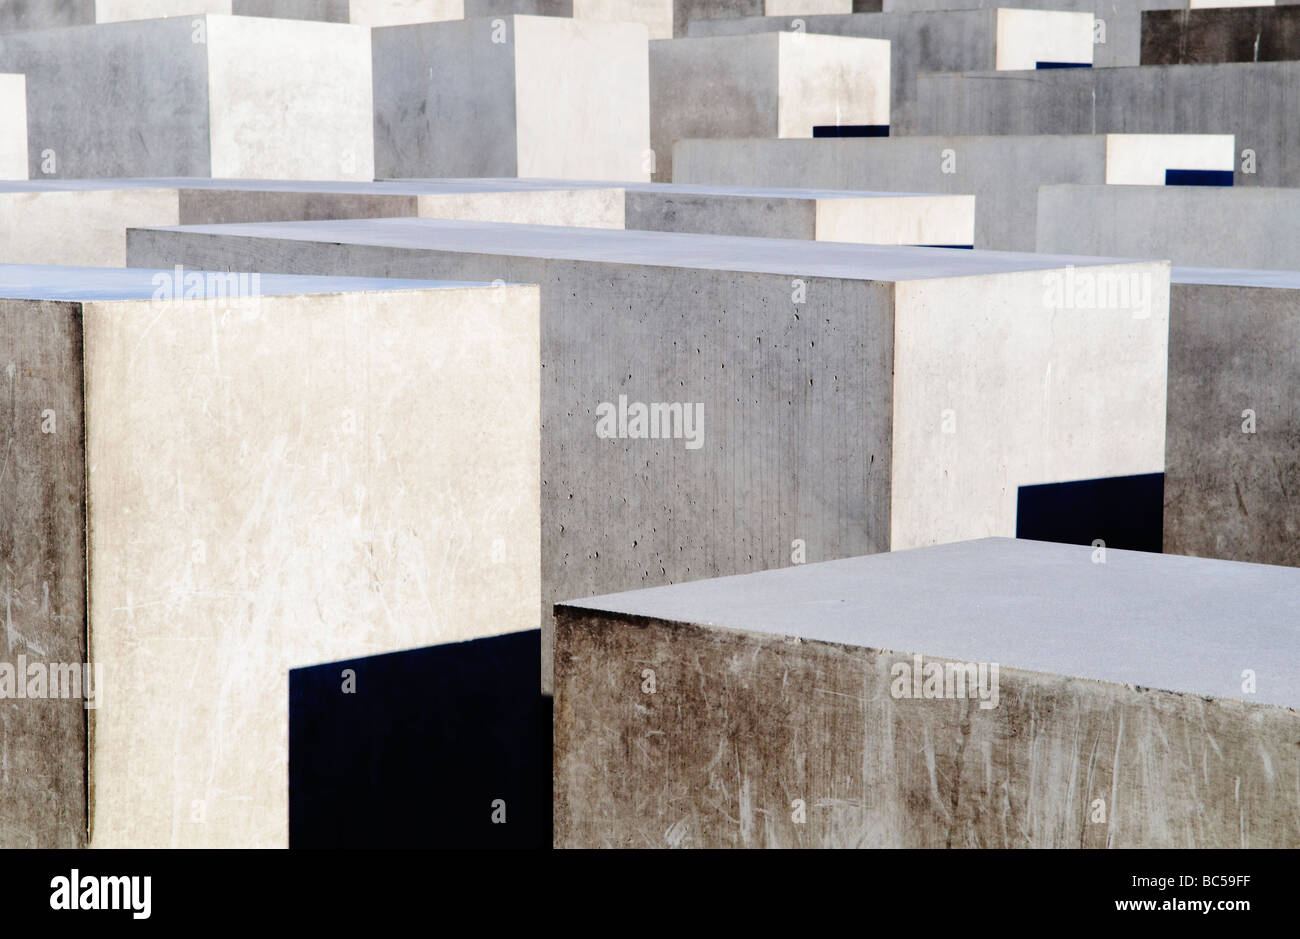 Il memoriale dell'Olocausto (Holocaust-Mahnmal) di Berlino. Il monumento agli ebrei assassinati d'Europa (tedesco: Denkmal für die ermordeten Juden Europas), noto anche come il Memoriale dell'Olocausto (tedesco: Holocaust-Mahnmal), è un memoriale di Berlino per la Ebrei vittime della Shoah, progettato dall'architetto Peter Eisenman e ingegnere Buro Happold. Esso consiste di un 19,000 metri (4.7 acri) sito coperta con 2,711 lastre in calcestruzzo o 'stelae', disposte in un modello a griglia su un campo in pendenza. La stele sono 2,38 m (7,8'), lunga 0.95m (3' 1.5') ampia e varia in altezza da 0,2 m a 4,8 m (8' a 15'9'). Accor Foto Stock